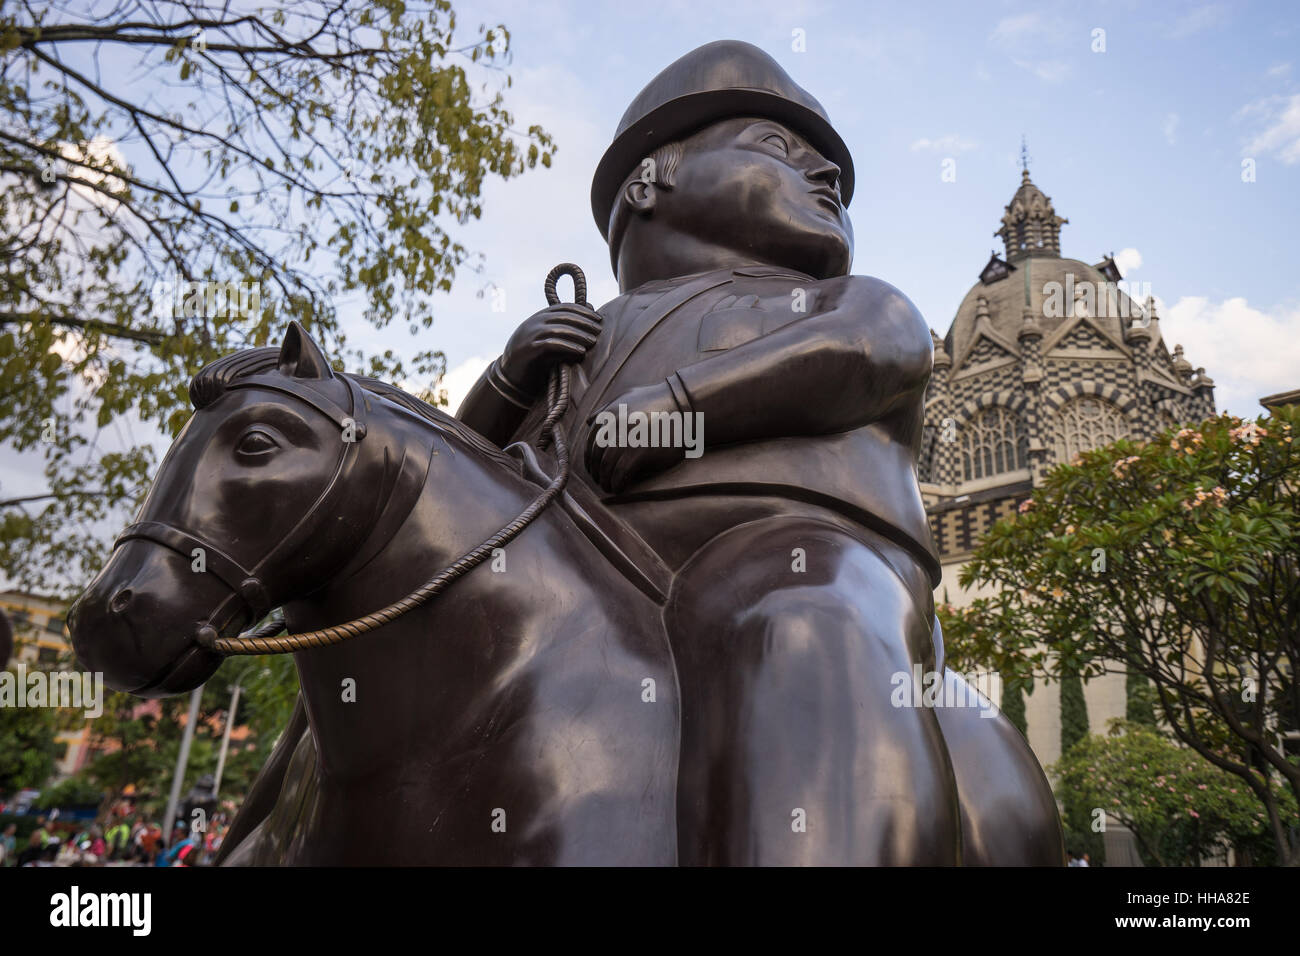 Oct 19,2016 Medellin, Colombia: statua surrealista di un uomo a cavallo donato da Botero alla sua città di nascita visualizzati pubblicamente Foto Stock